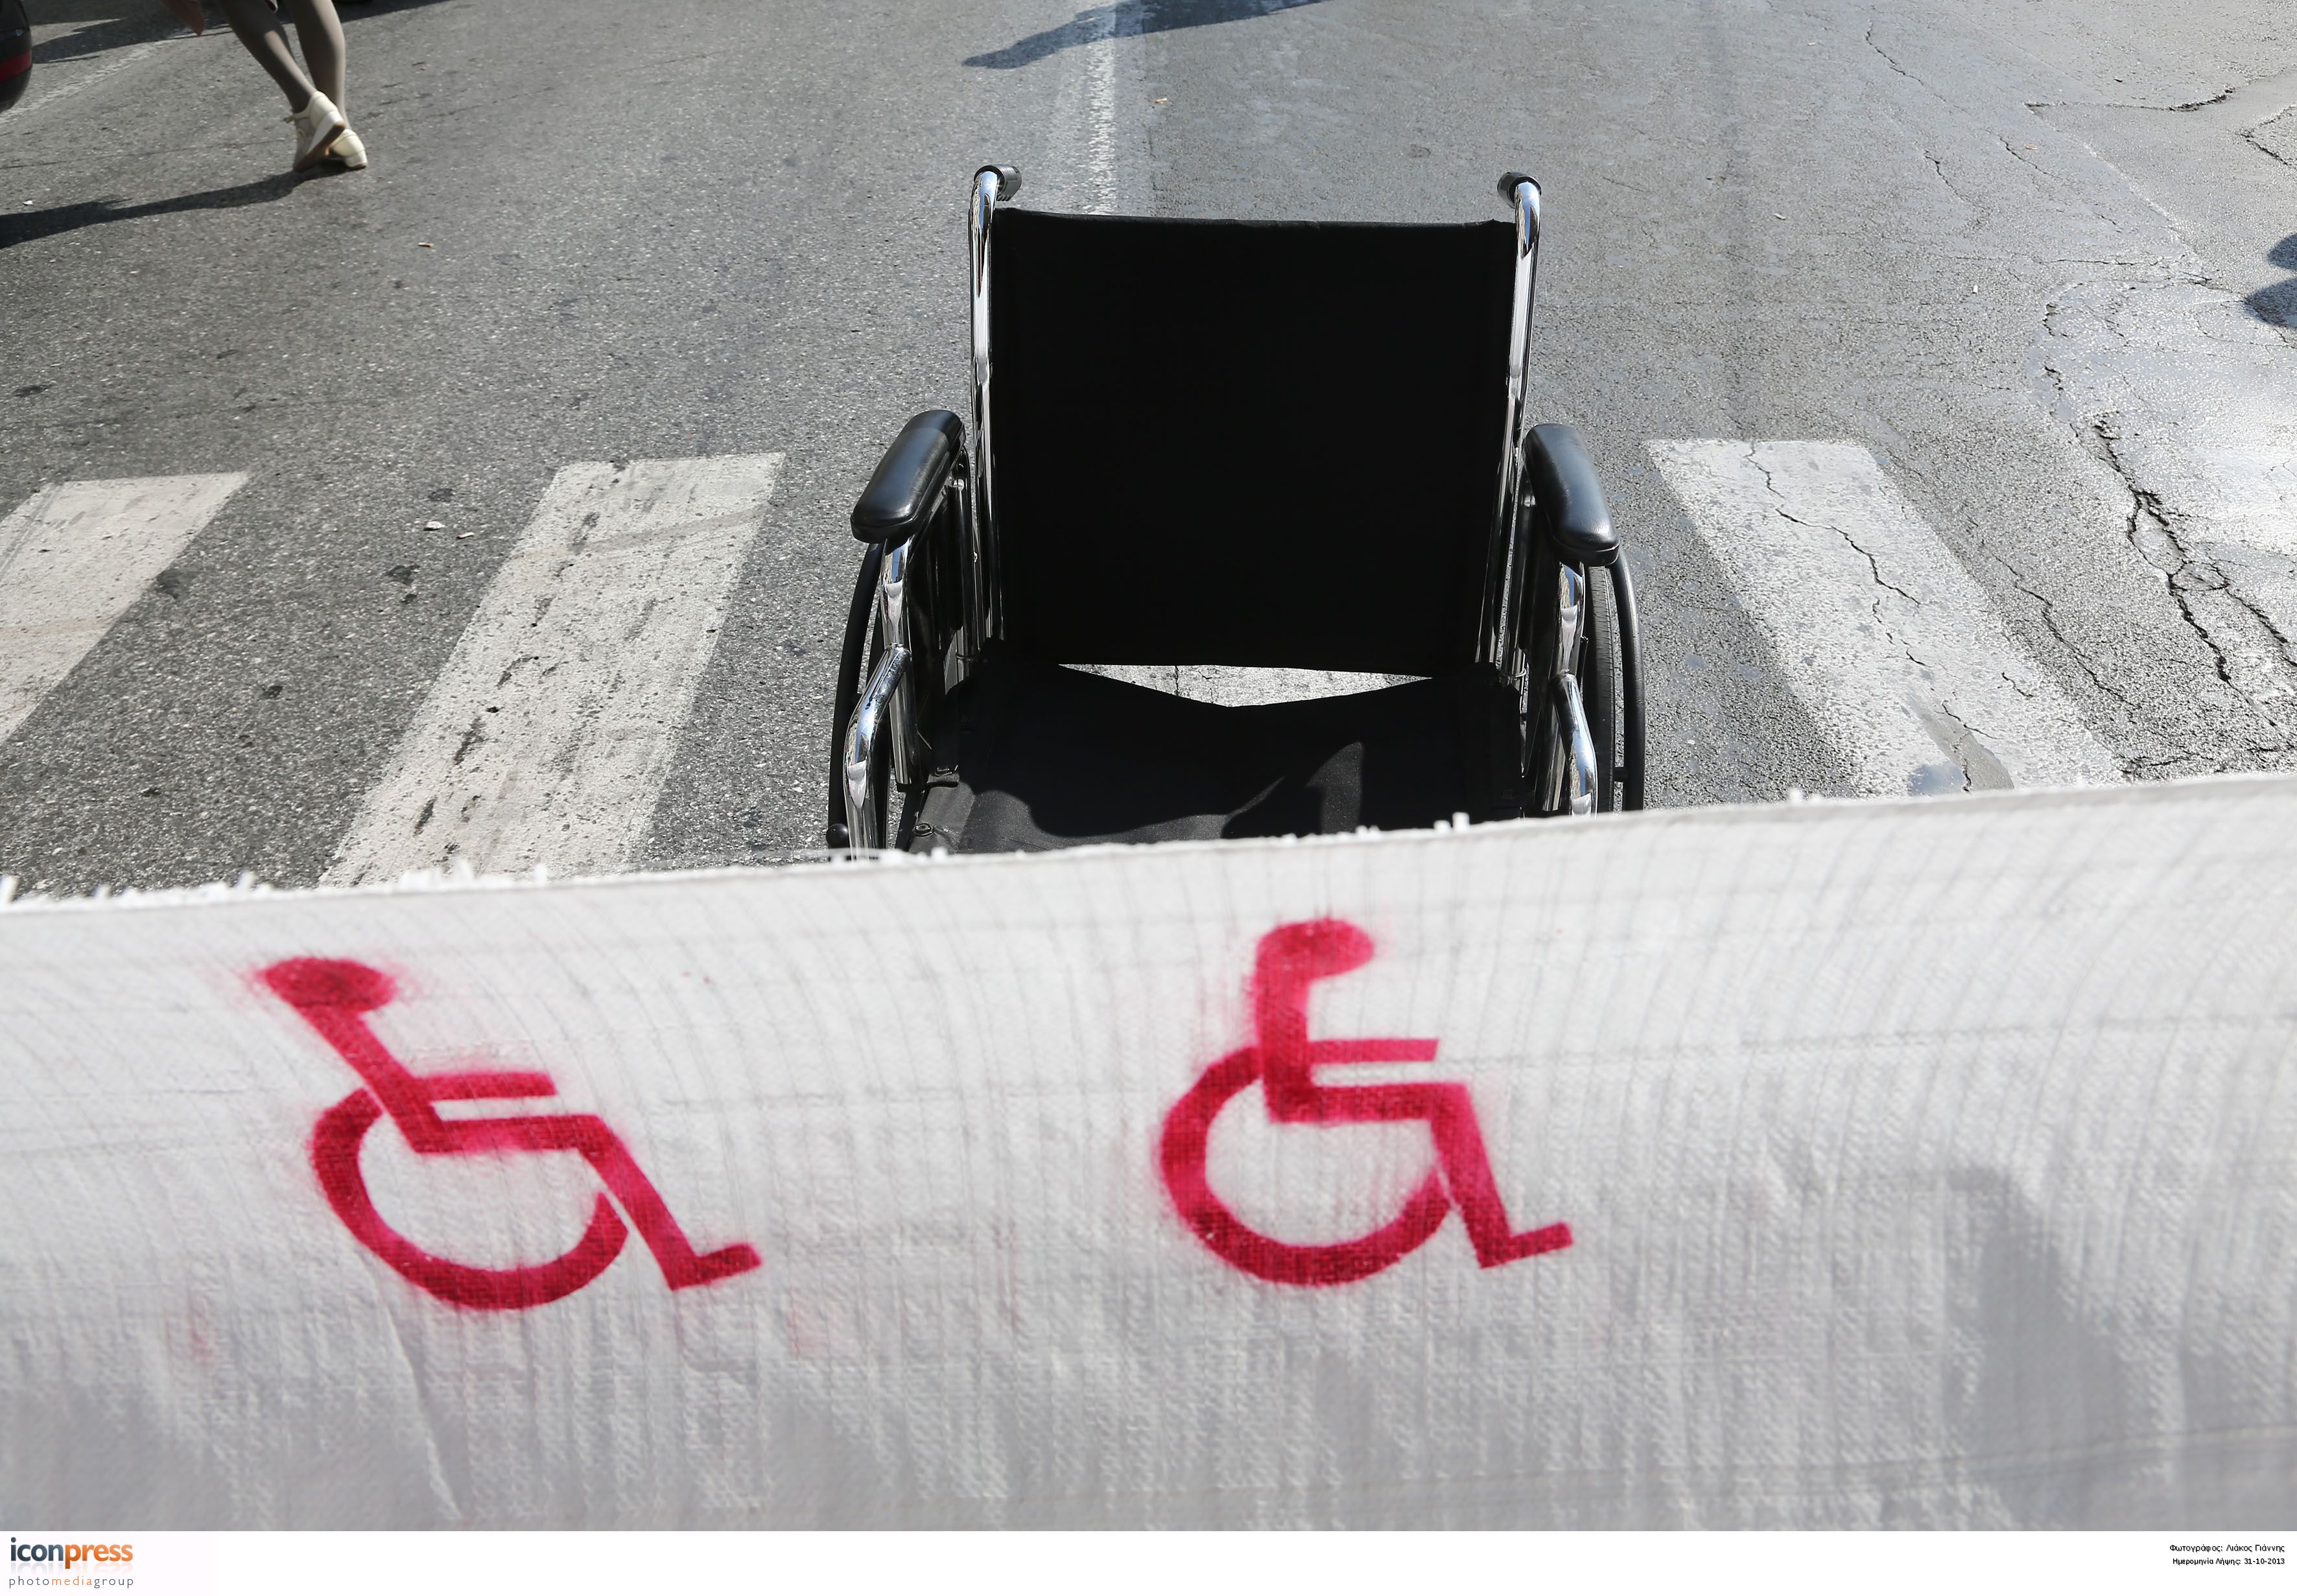 Ατομα με αναπηρία: Ζητούν παρέμβαση για τις εκπτώσεις ΕΝΦΙΑ